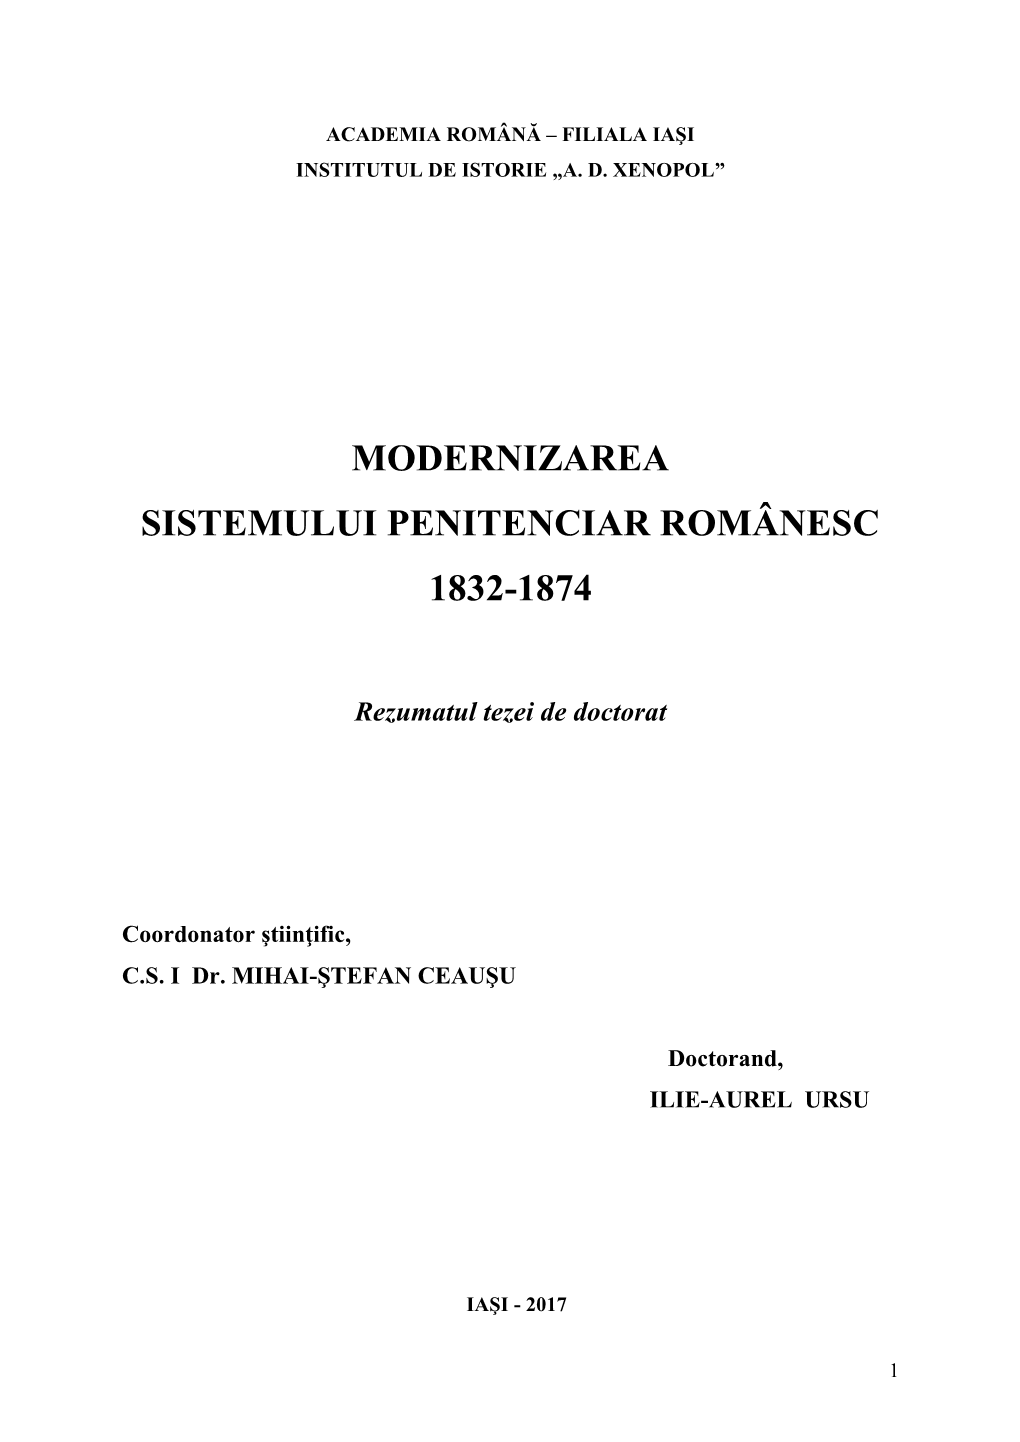 Modernizarea Sistemului Penitenciar Românesc 1832-1874